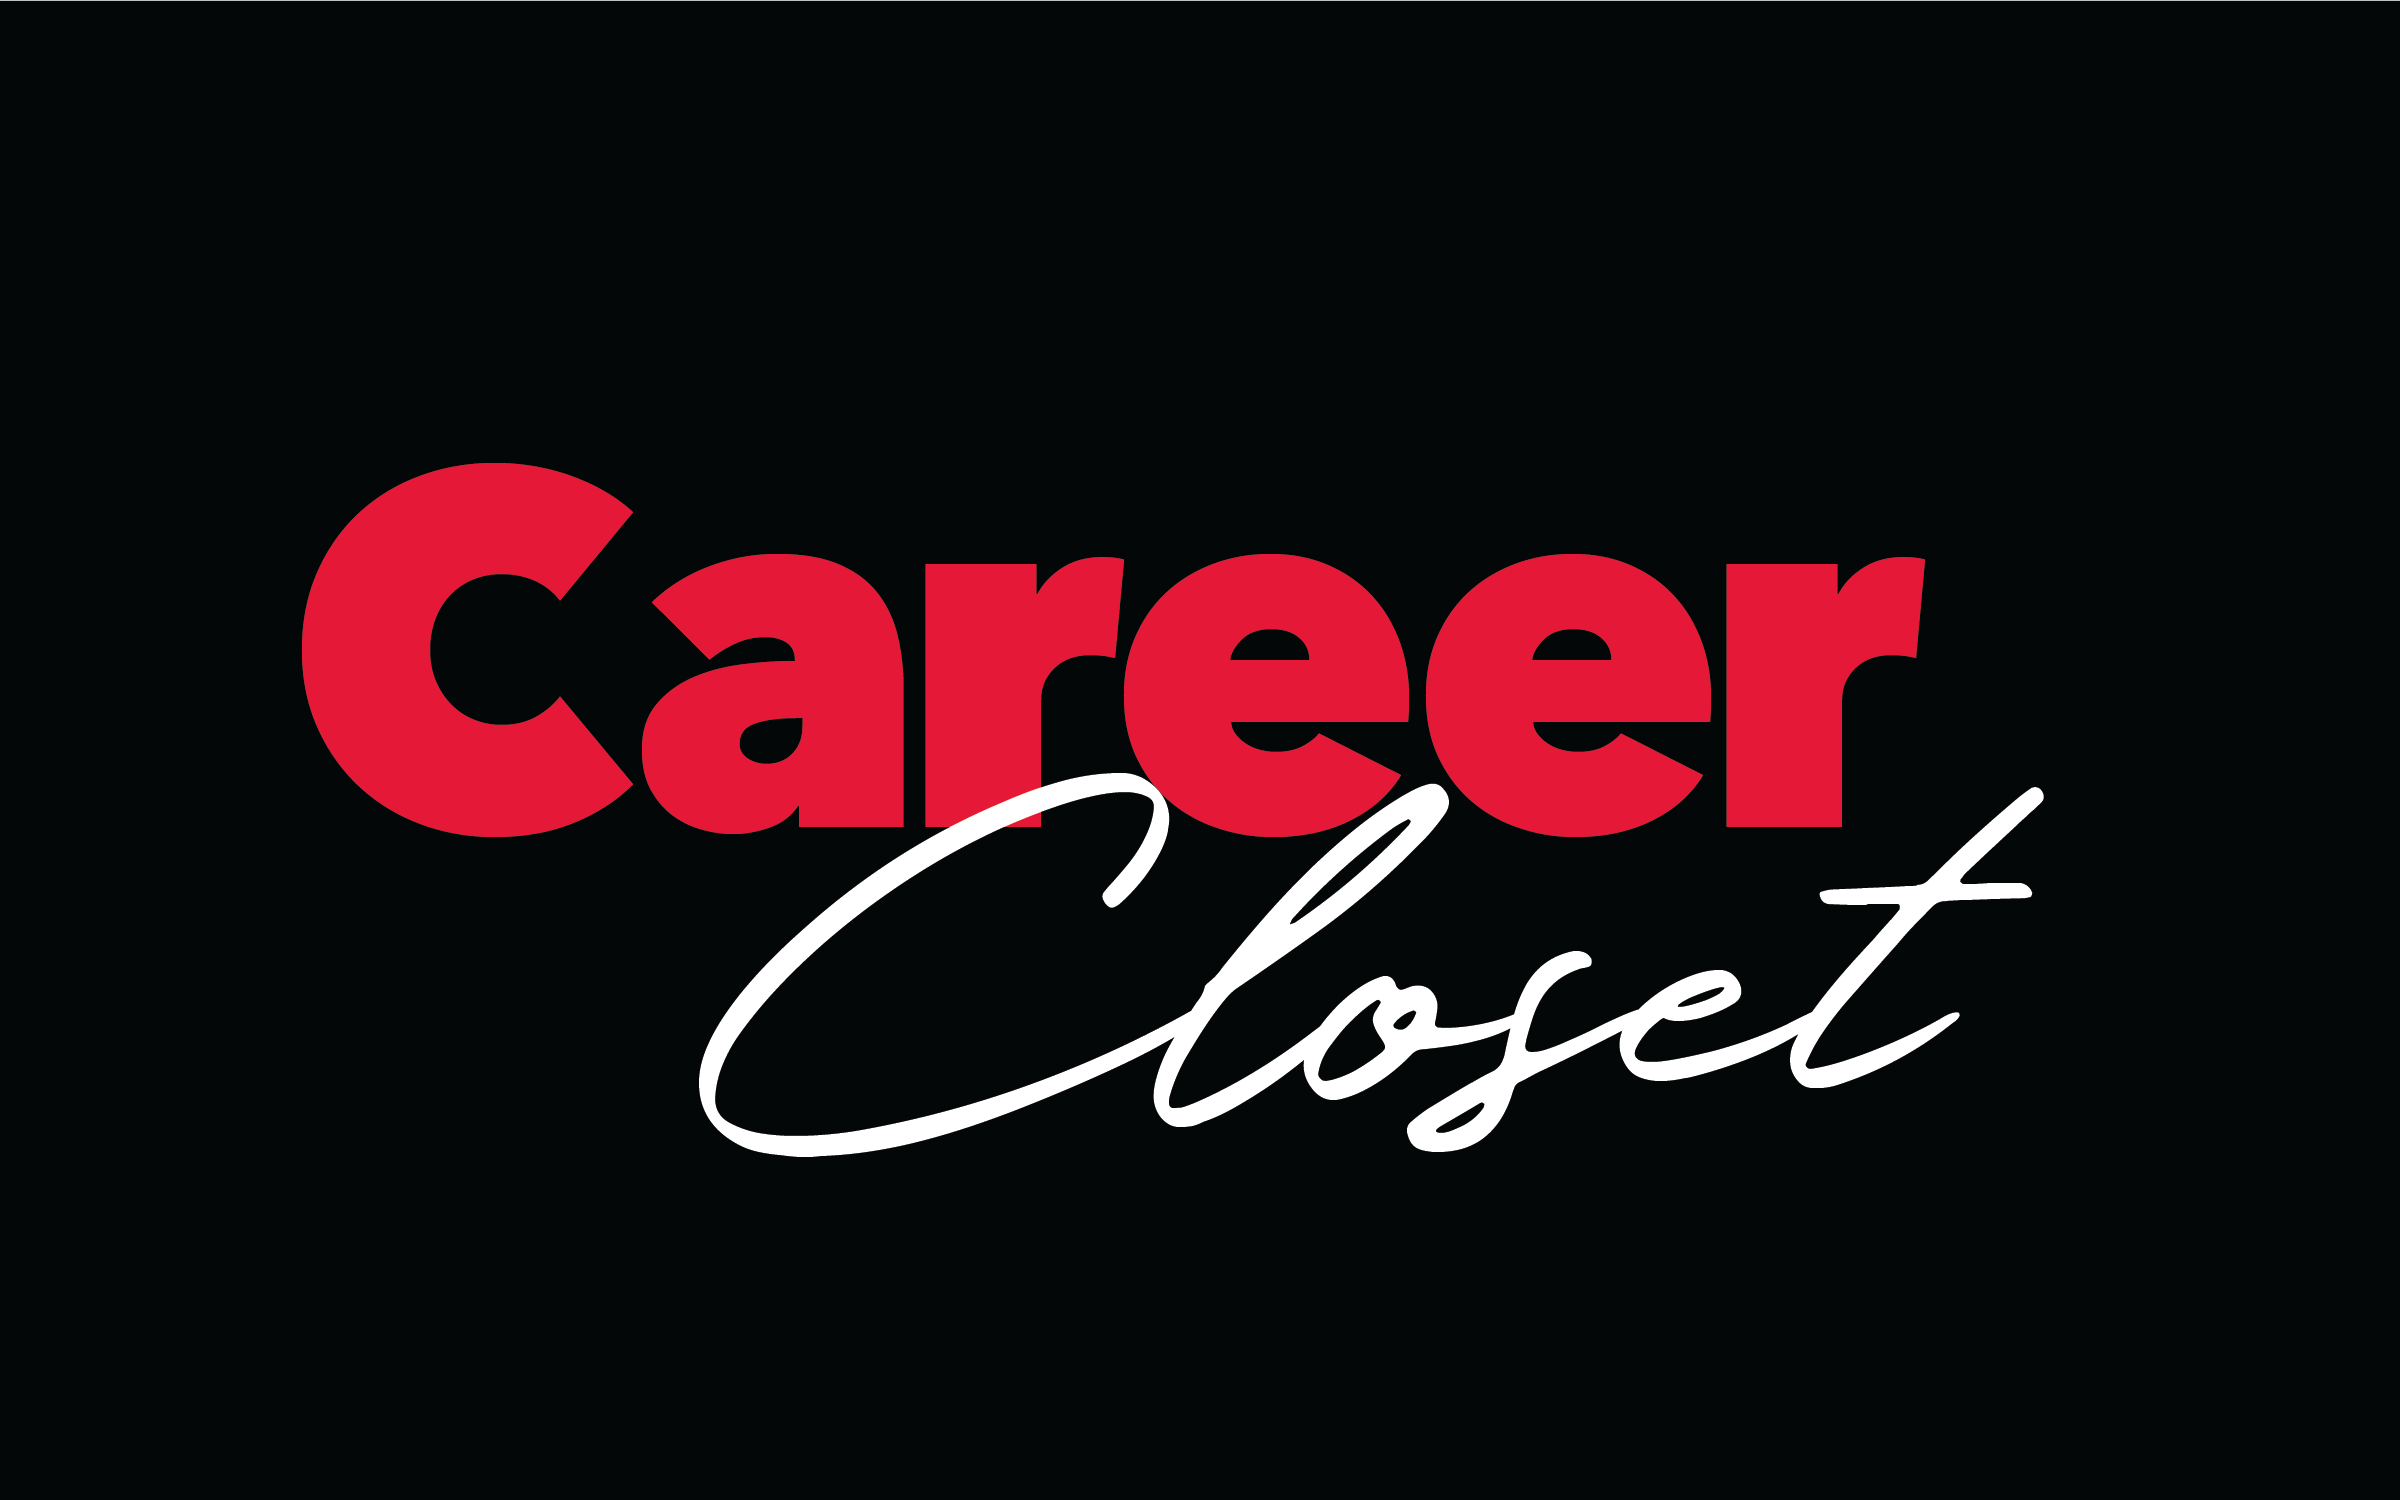 Career Closet Logo.png